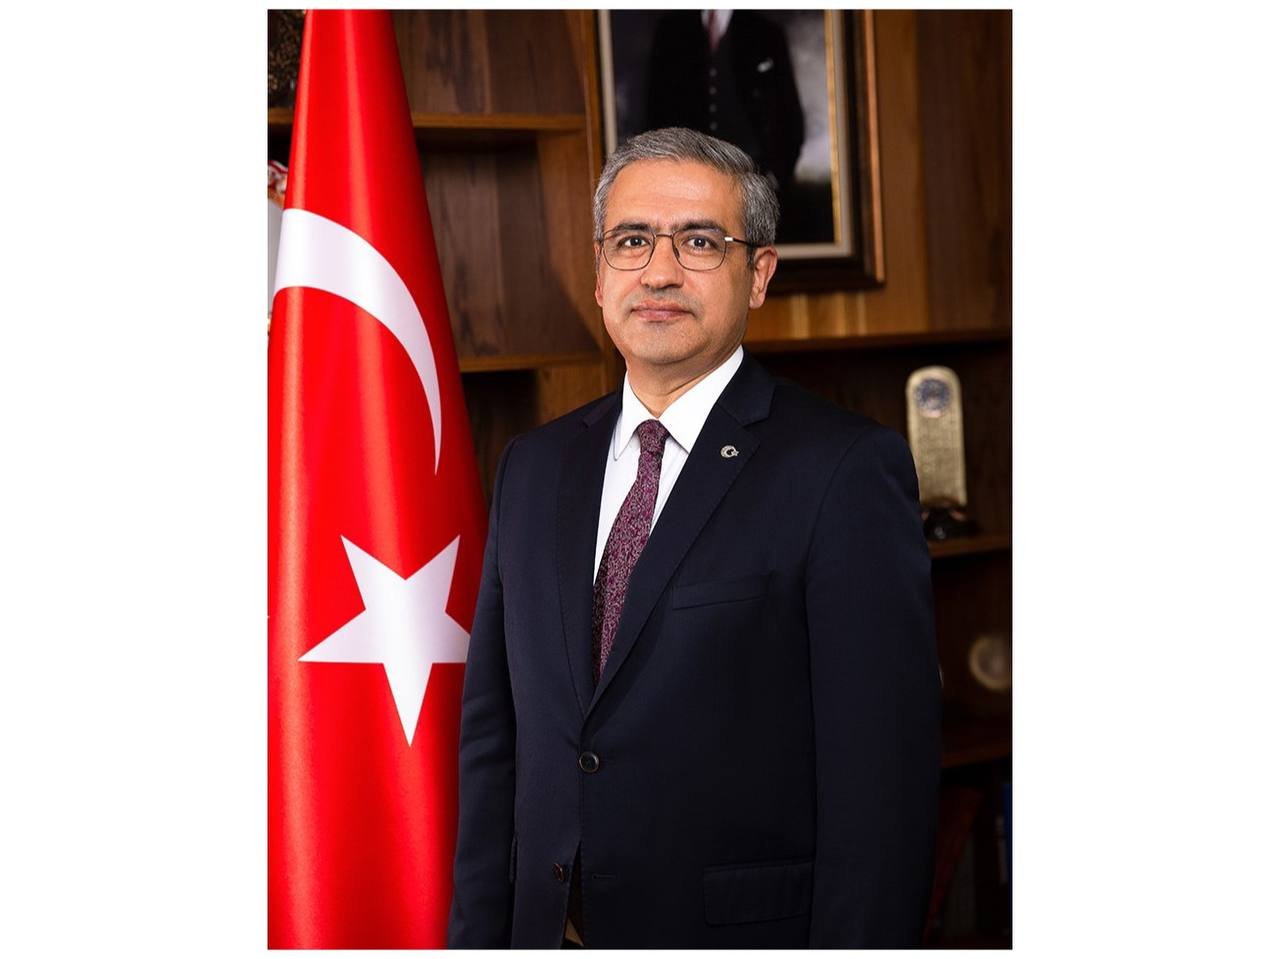 Türkiye is one of main investors in Uzbekistan’s economy - ambassador (Exclusive)